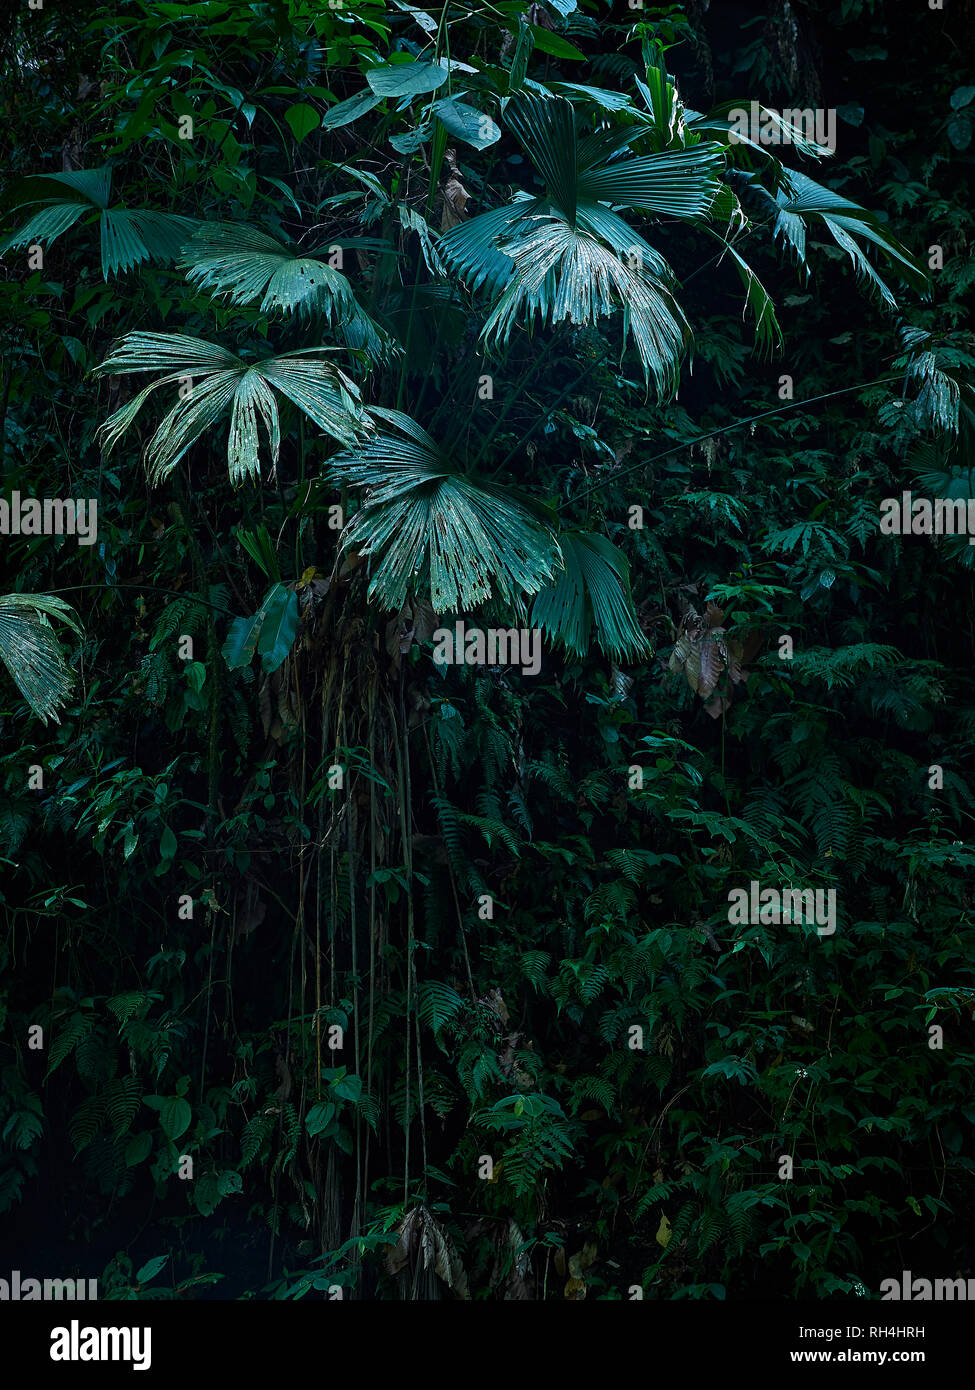 Alberi di palma tropicali, vigne, felci in Primal foresta del Costa Rica, America centrale Foto Stock